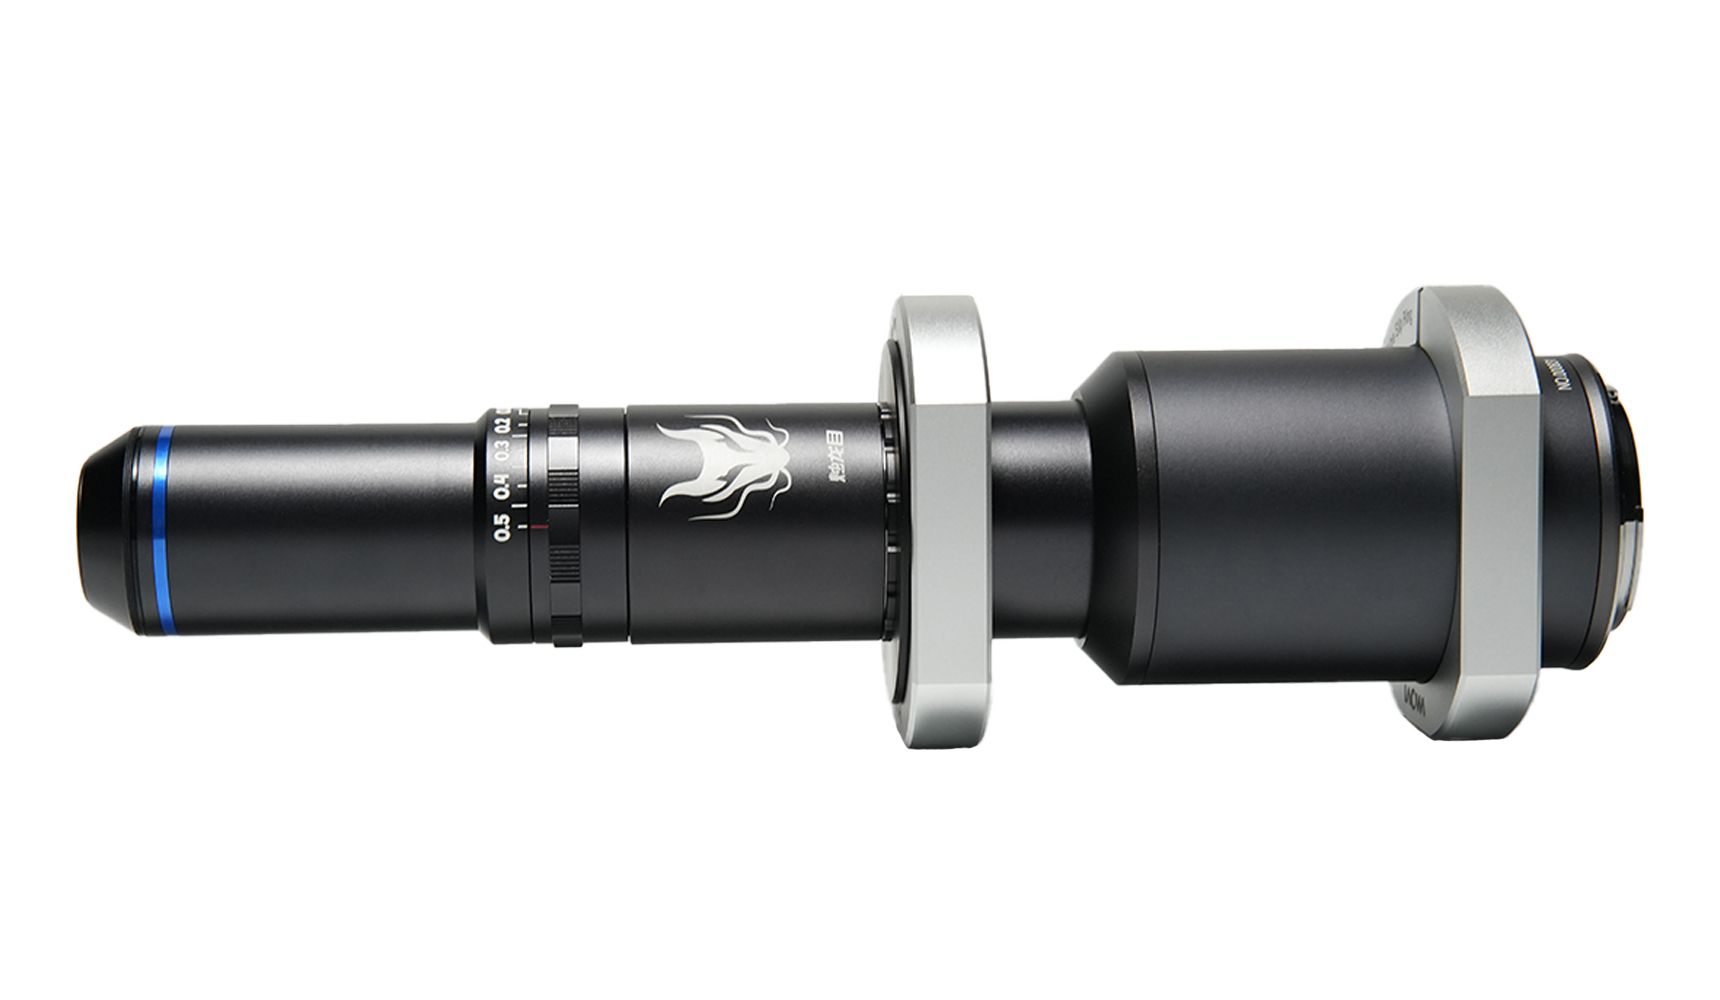 LAOWA - VEAURING - Lens Tube Slip Ring for Aurogon